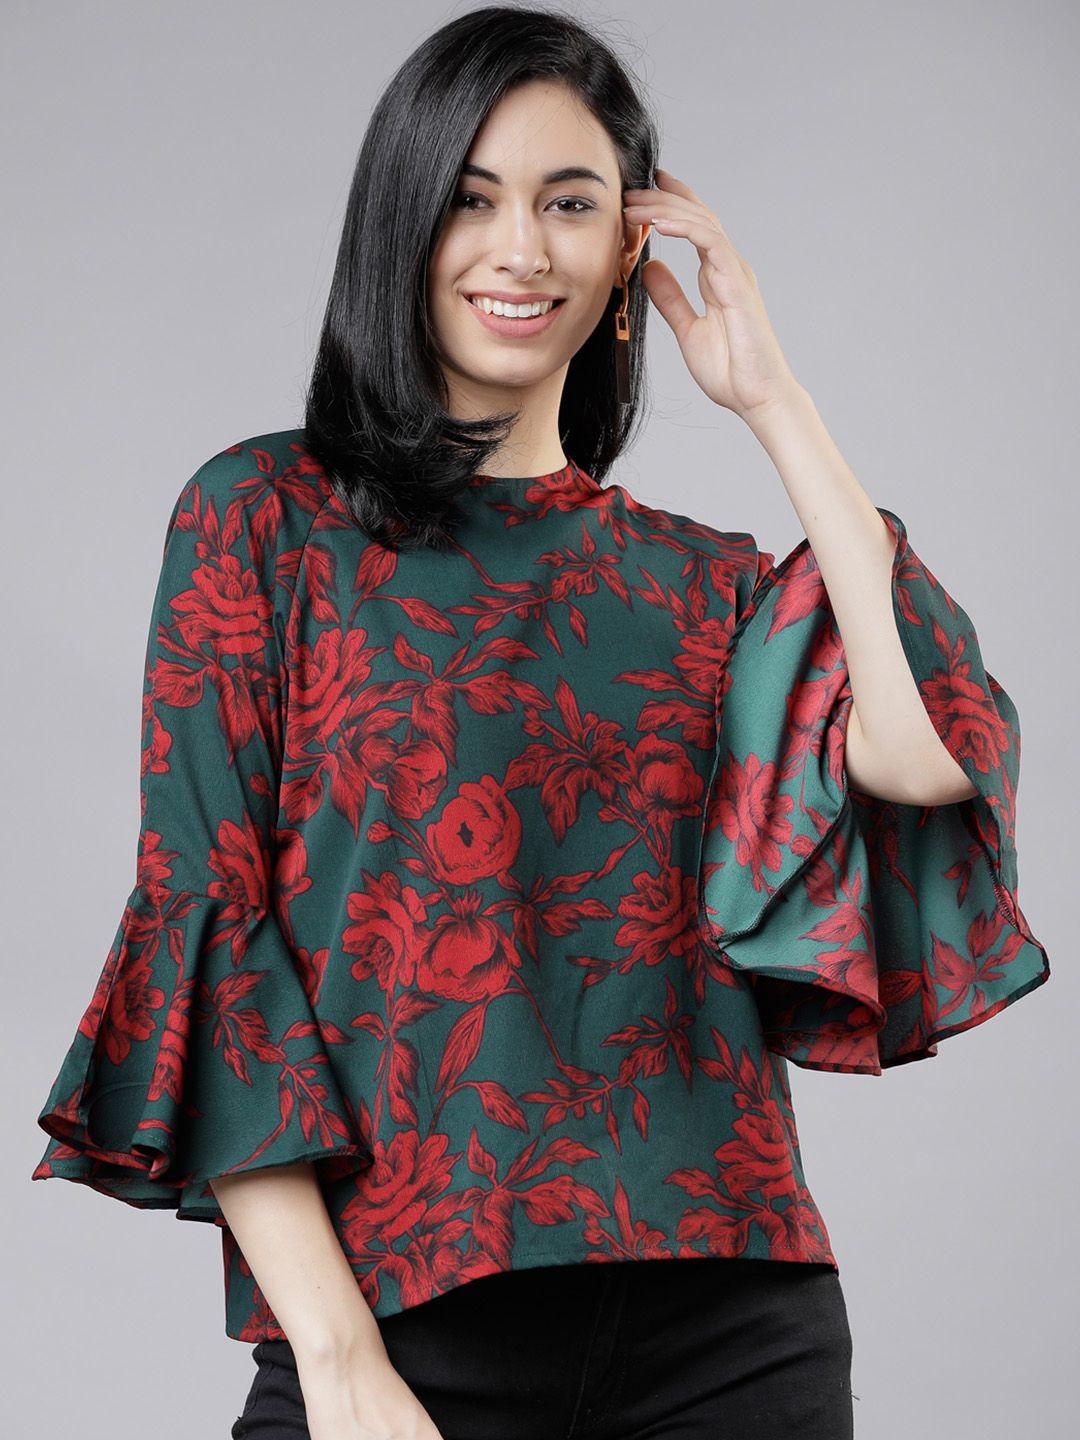 tokyo talkies women teal floral printed a-line top